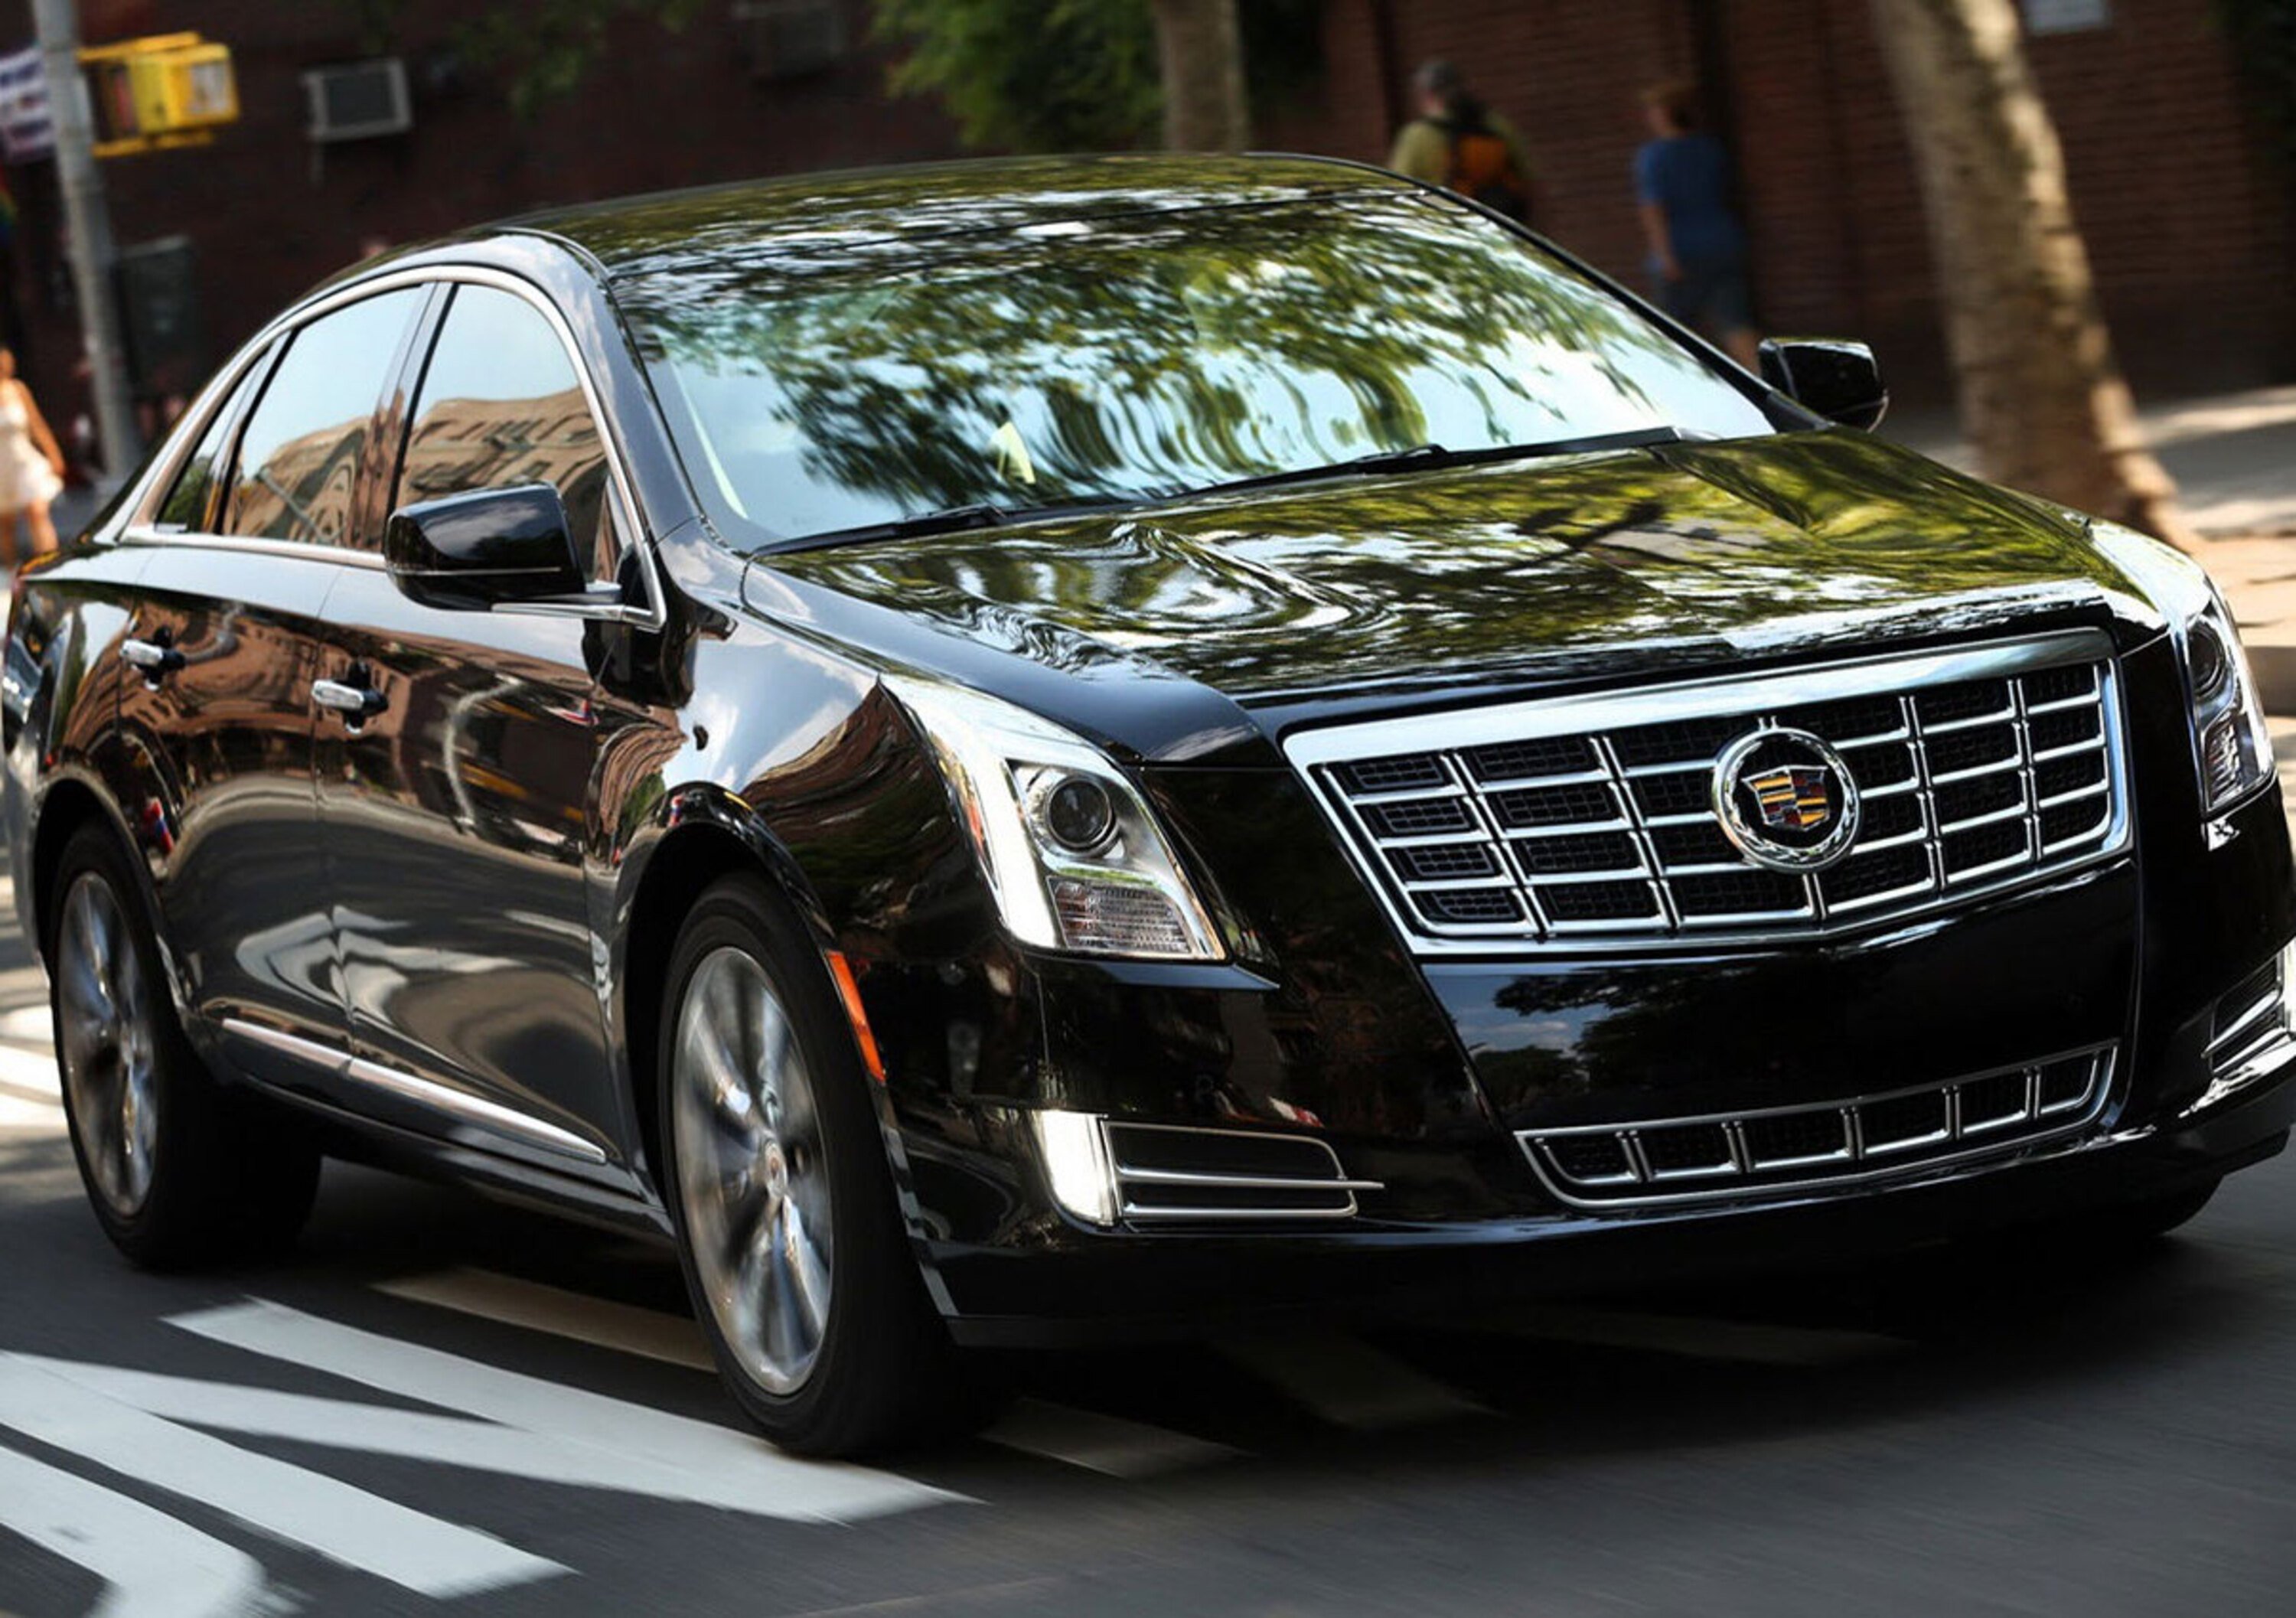 General Motors: si indaga sui presunti airbag killer. Richiami per 3 milioni di auto